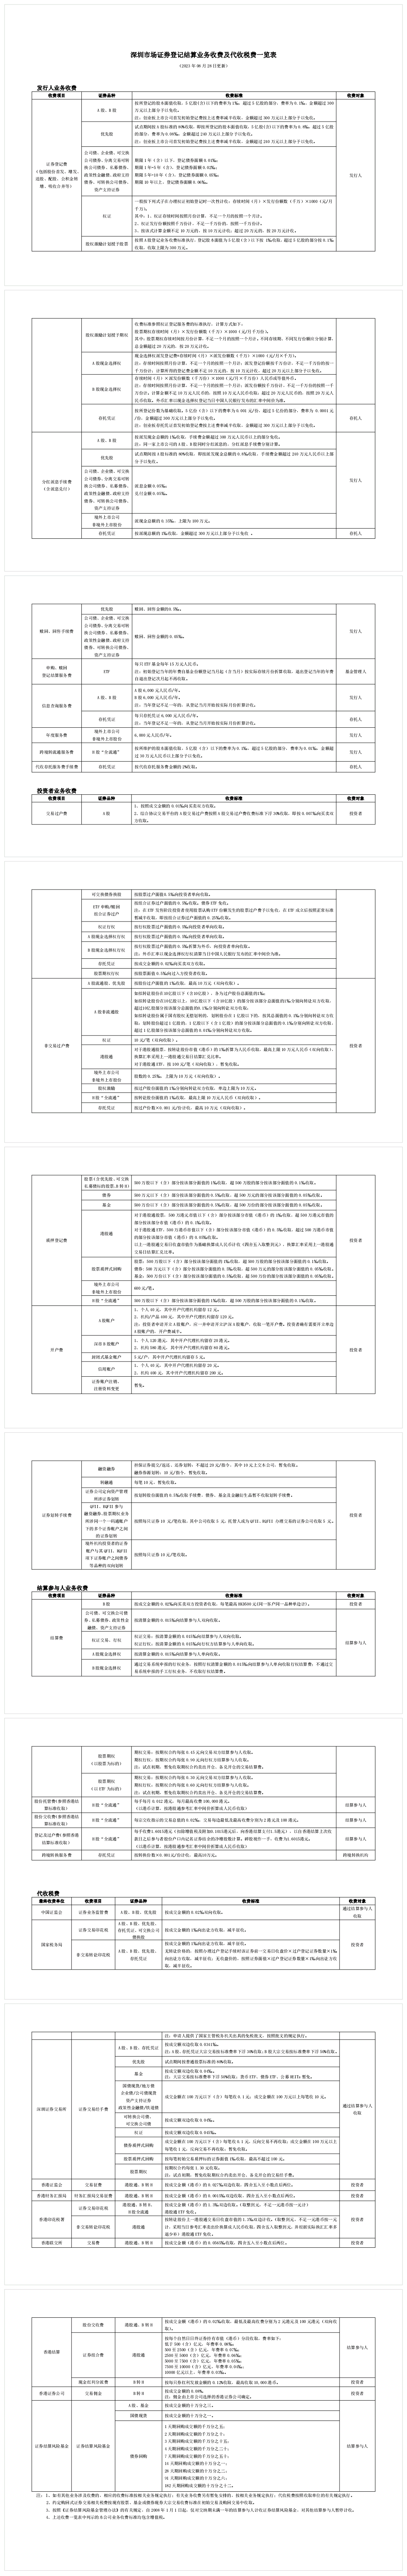 深圳市场证券登记结算业务收费及代收税费一览表.png